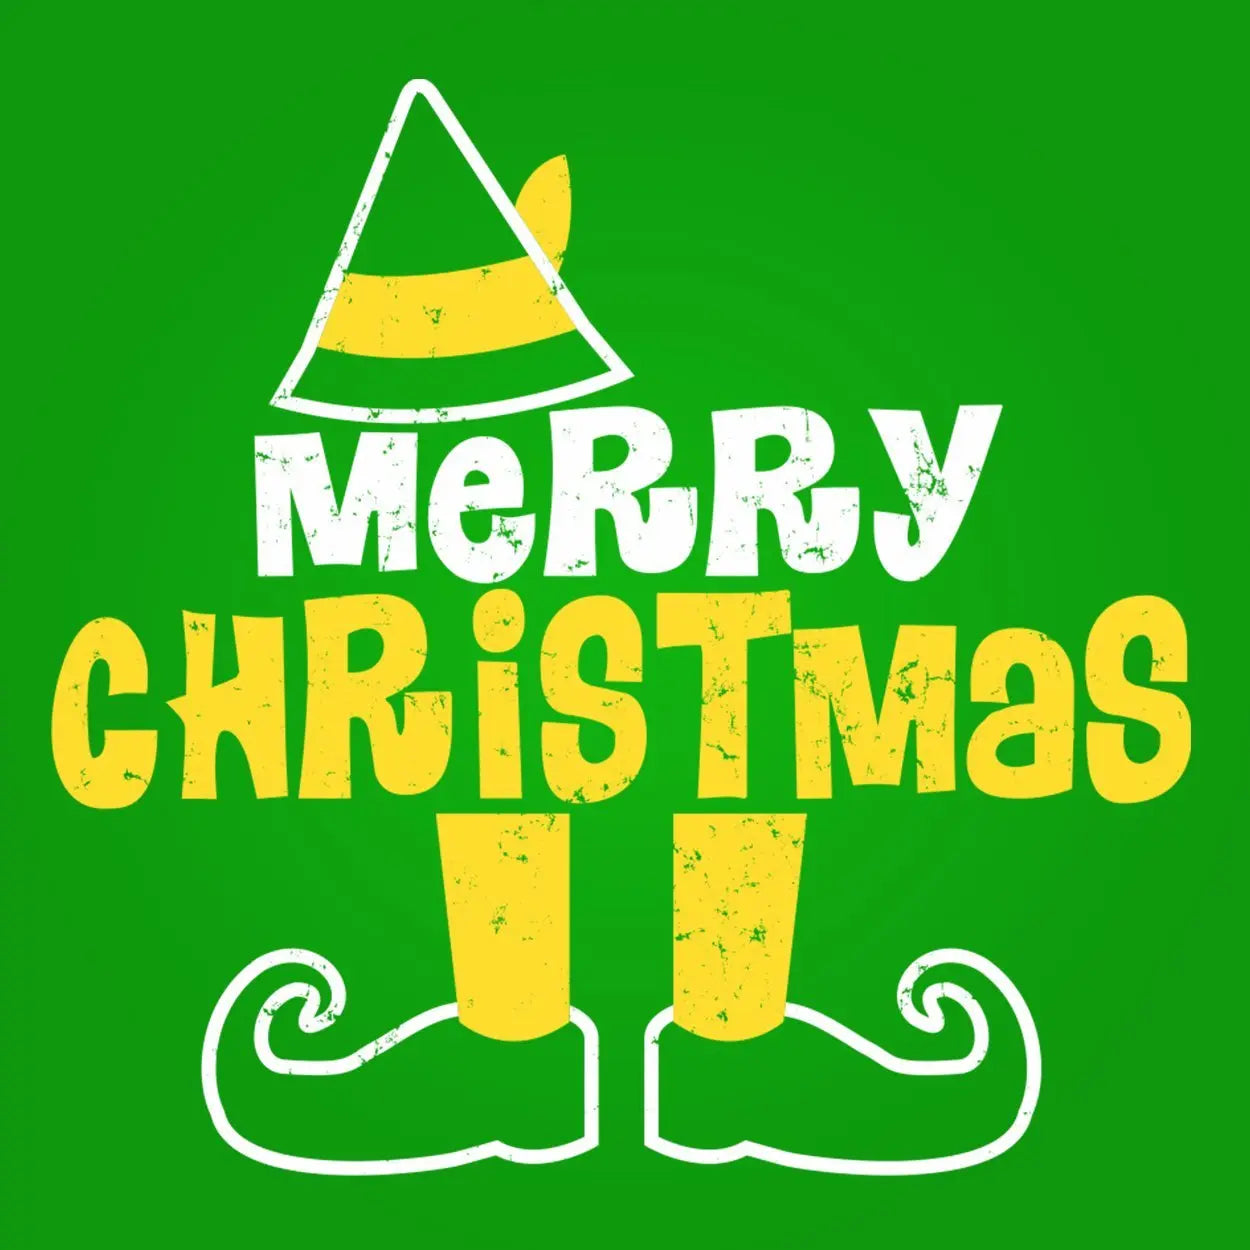 Elf Legs Merry Christmas Tshirt - Donkey Tees